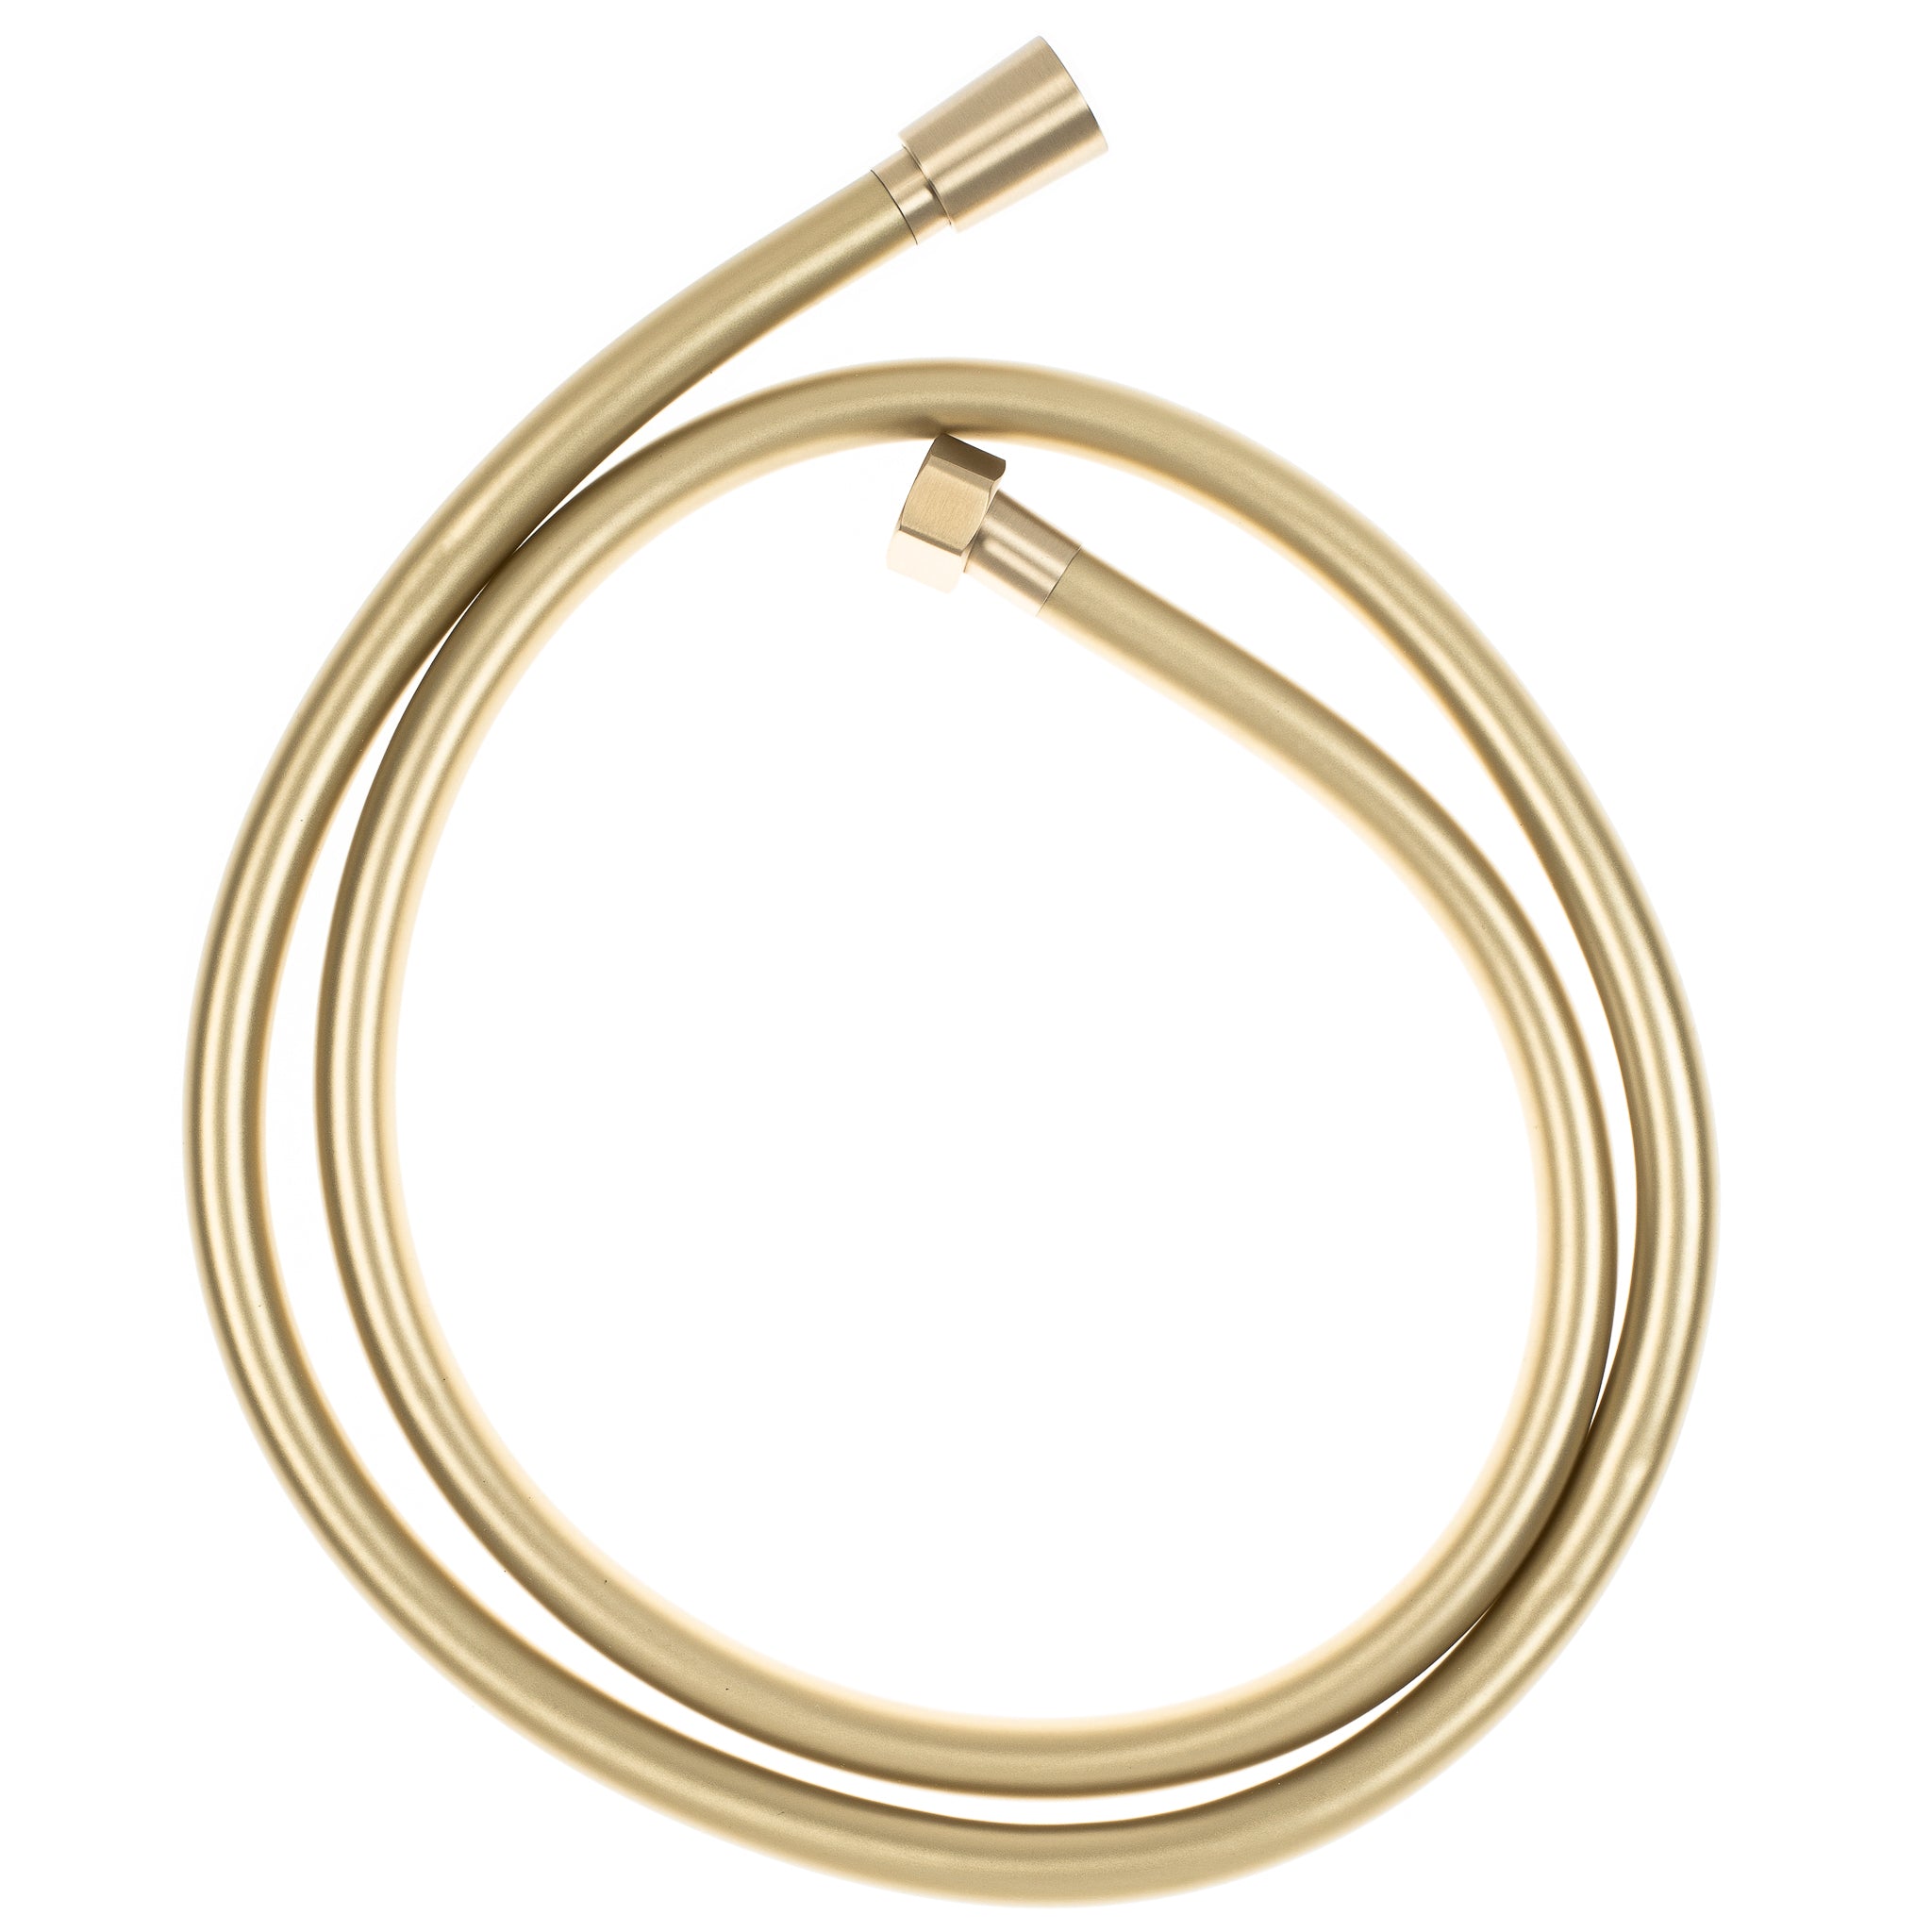 PVC Shower Hose - 1500mm, Brushed Brass (Gold)